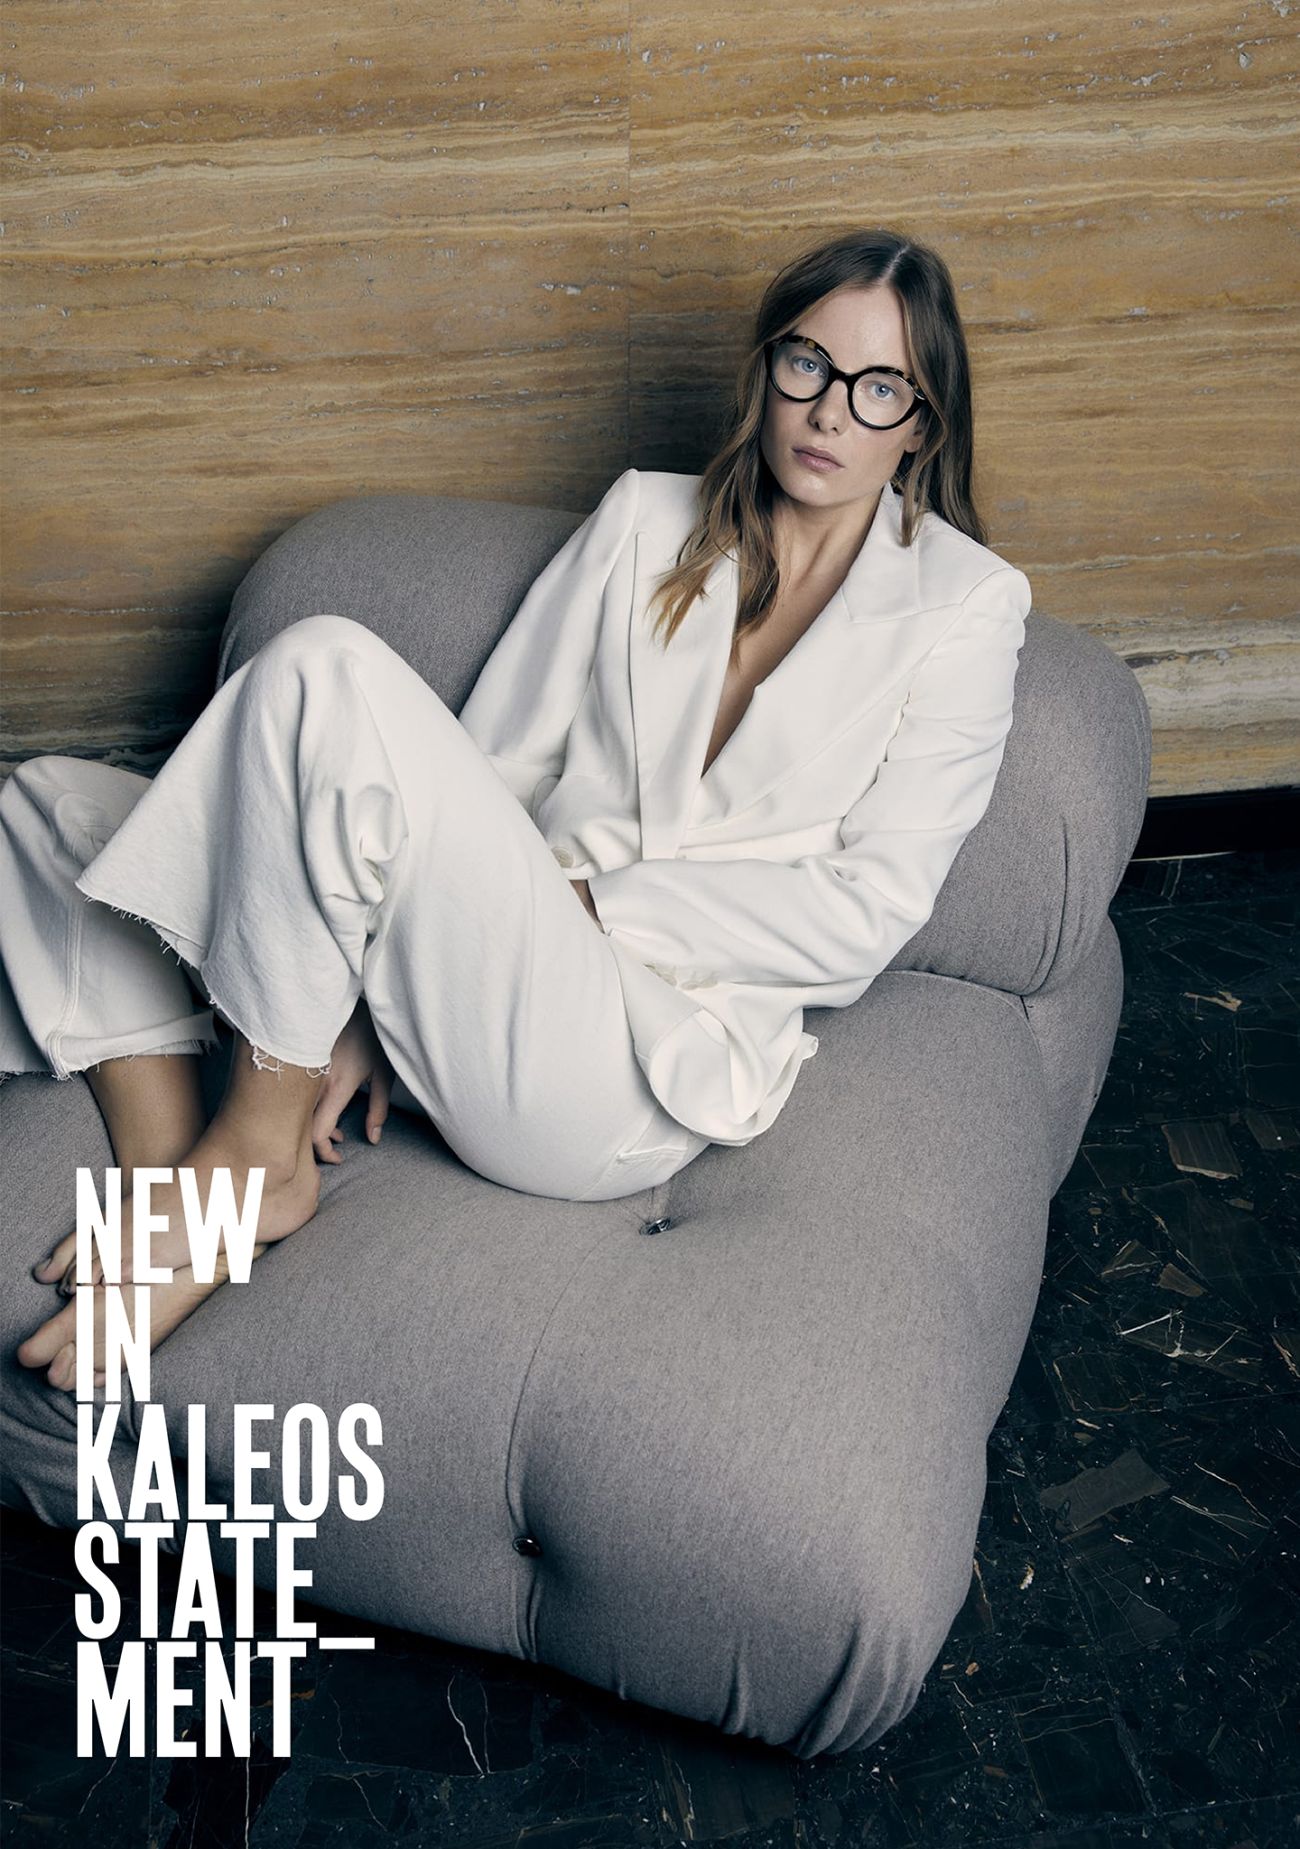 Moda, innowacyjność i jakość to wartości, które inspirują i kierują Kaleos.